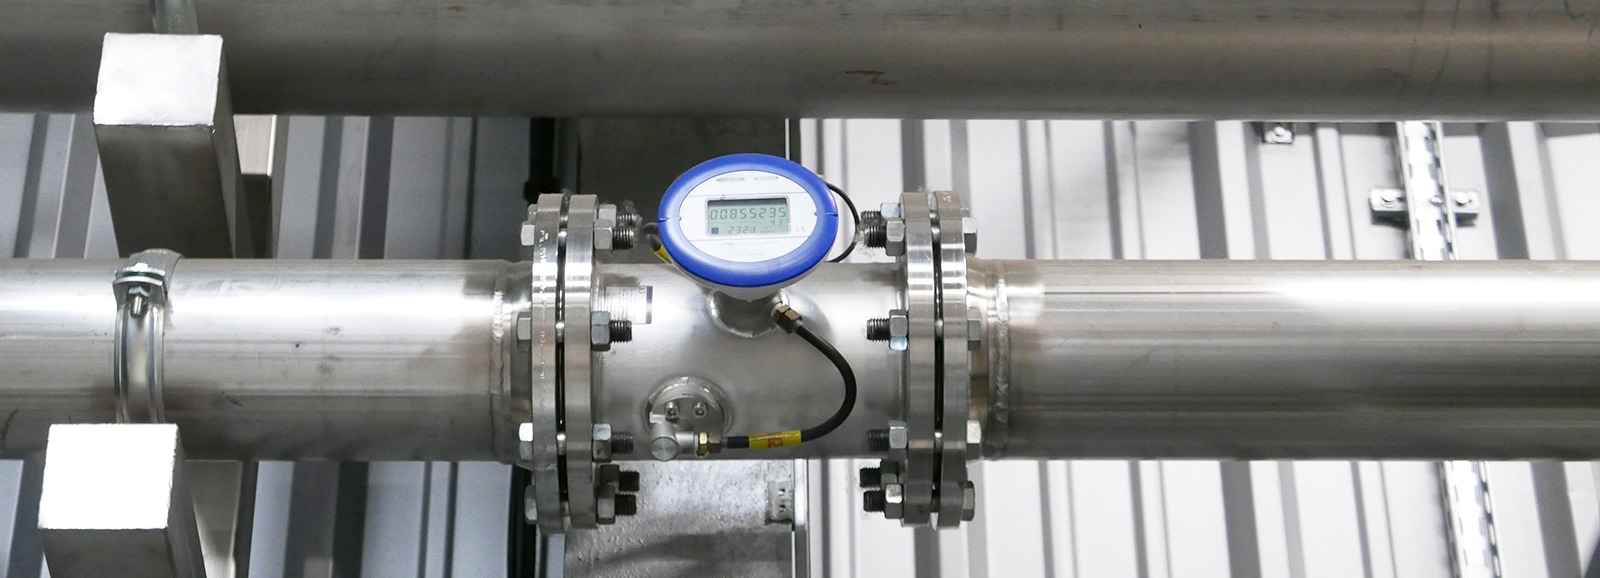 key points of the nitrogen gas flow meter